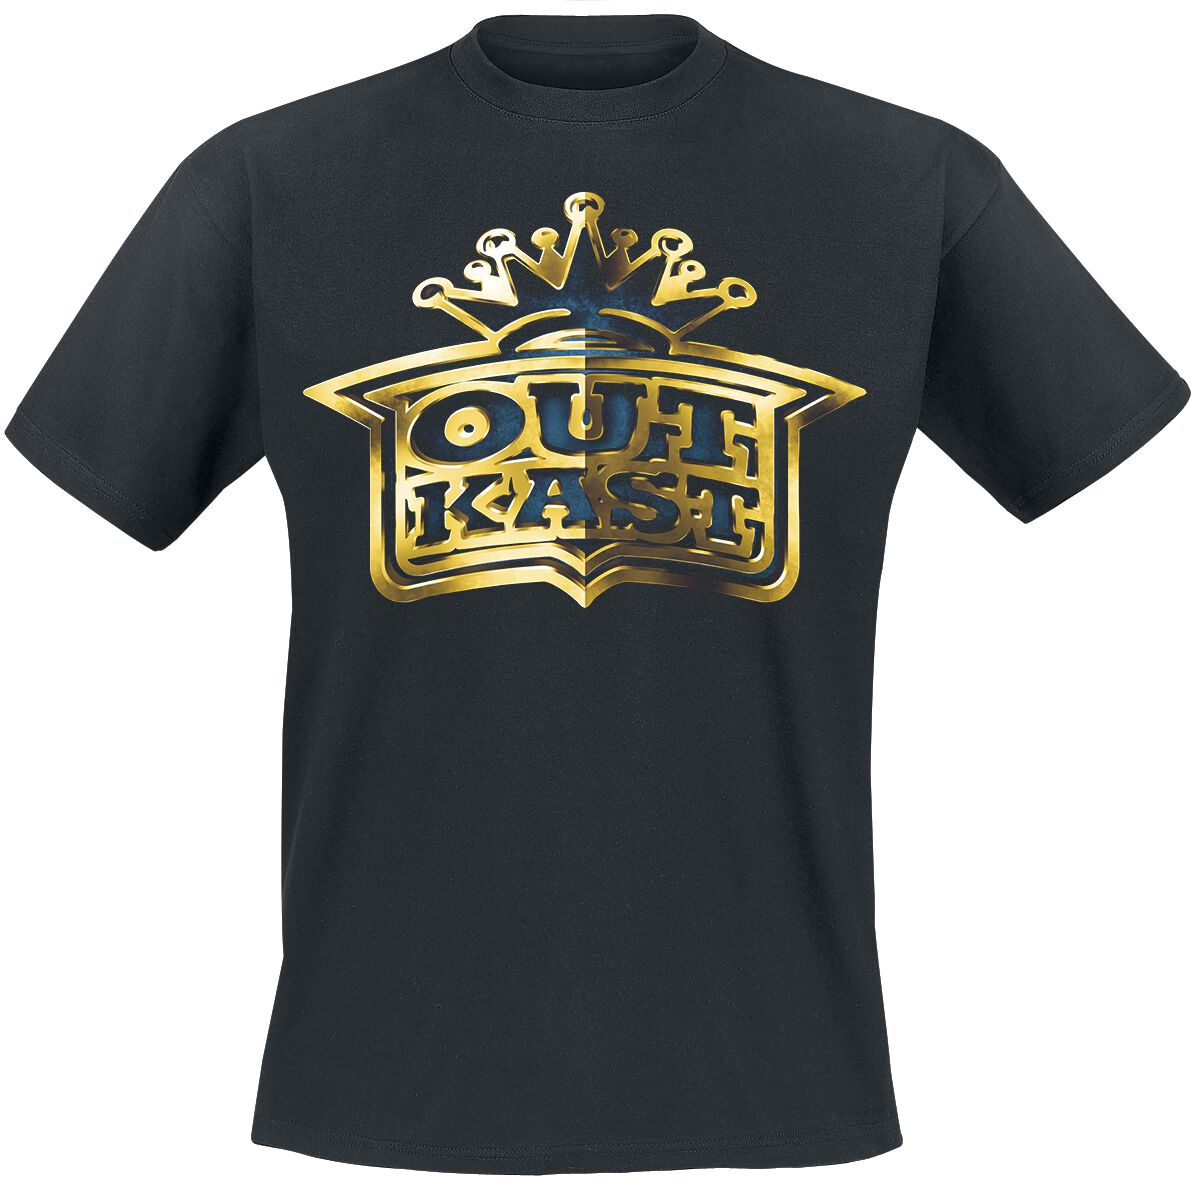 OutKast T-Shirt - Gold Logo - S bis L - für Männer - Größe M - schwarz  - Lizenziertes Merchandise!